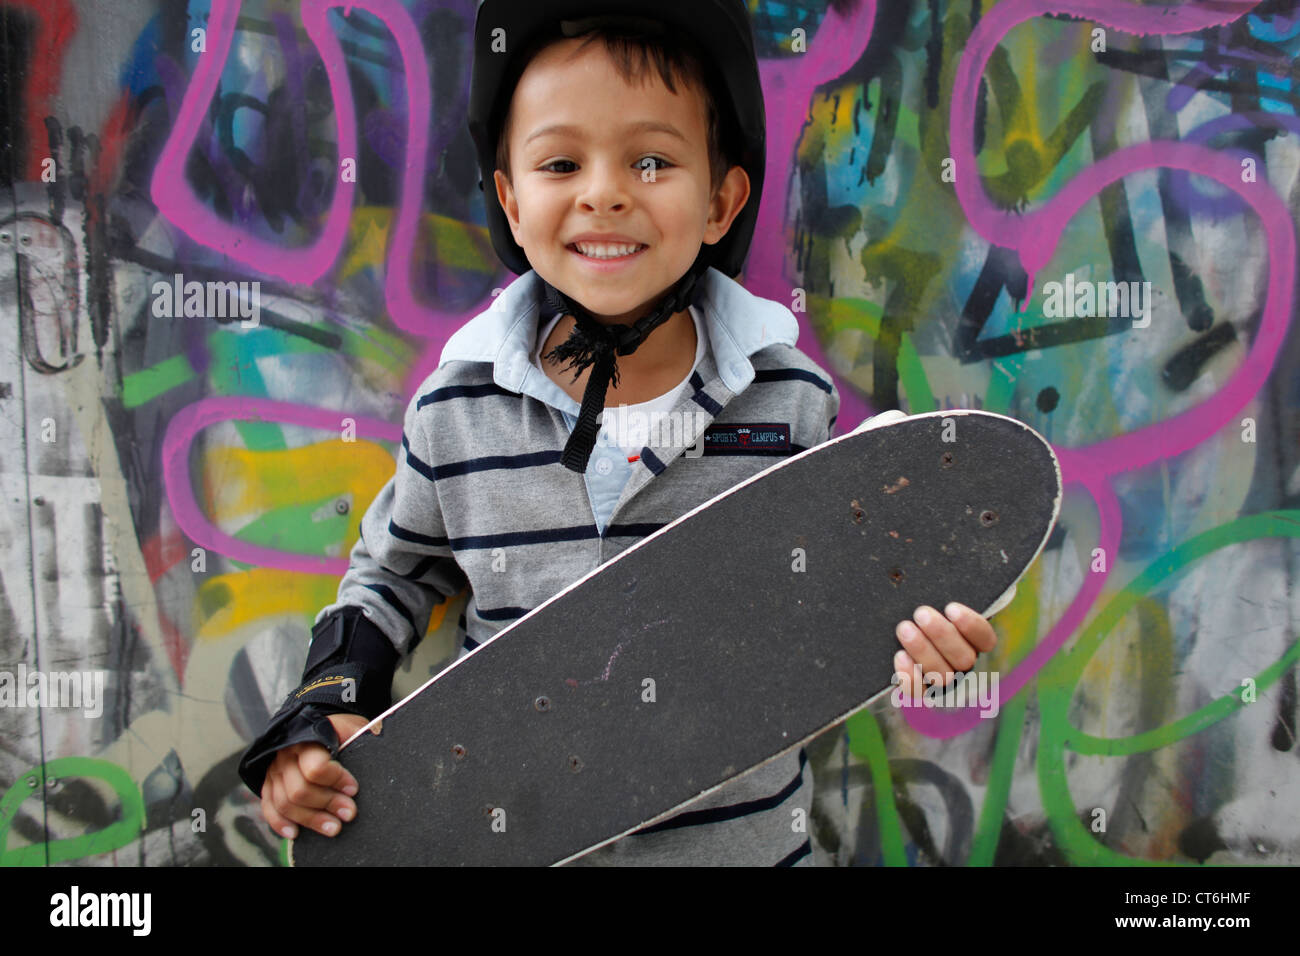 5-Year-Old Boy mit einem skateboard Stockfoto